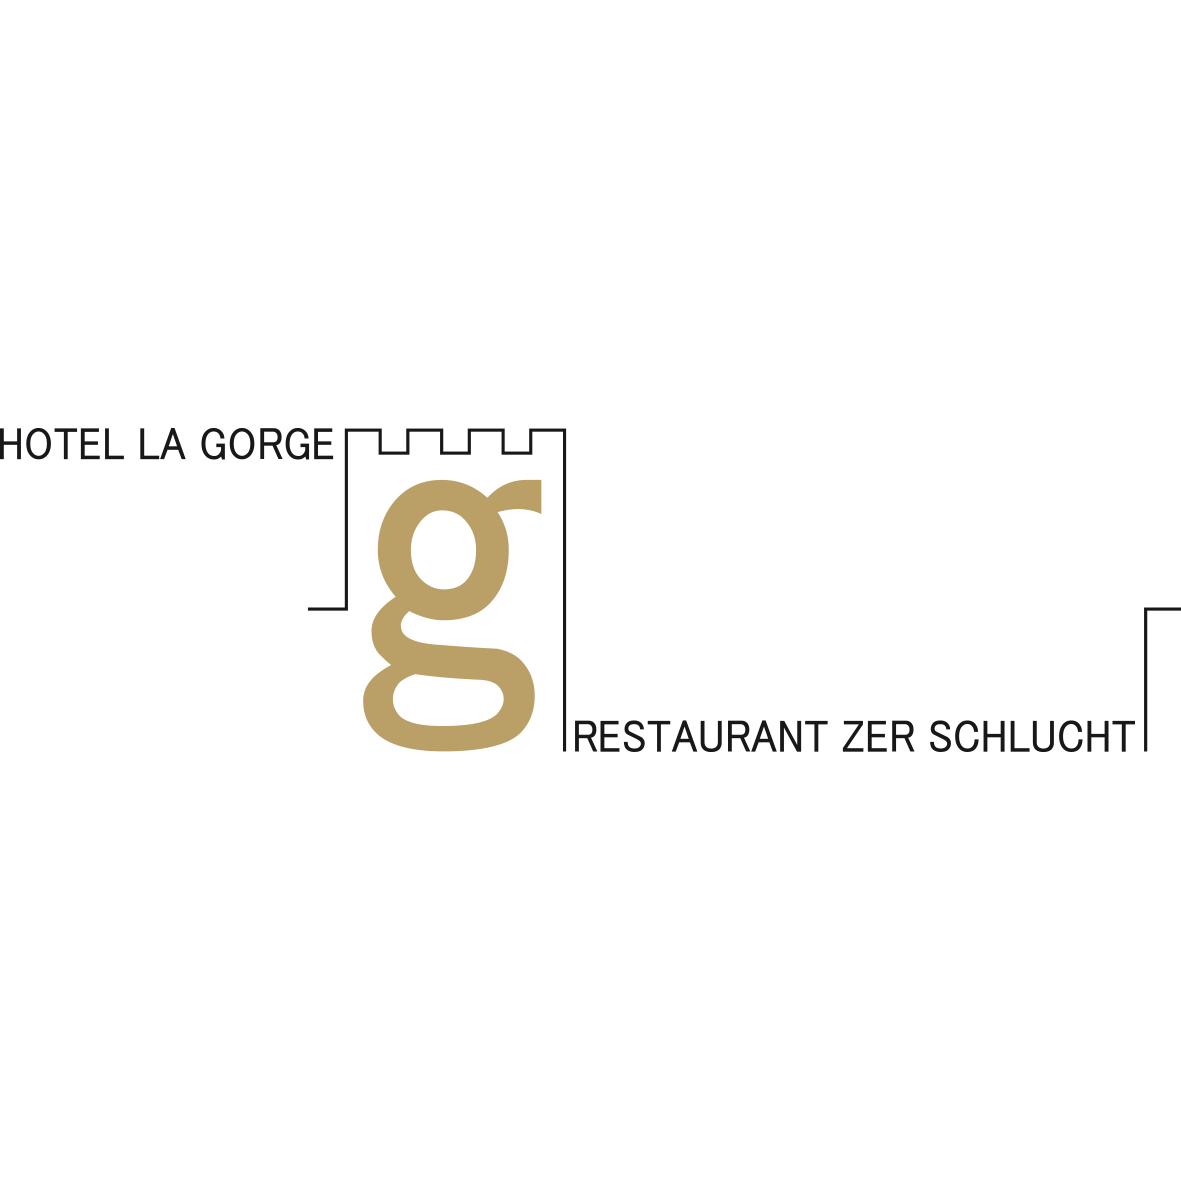 Hotel La Gorge & Restaurant Zer Schlucht